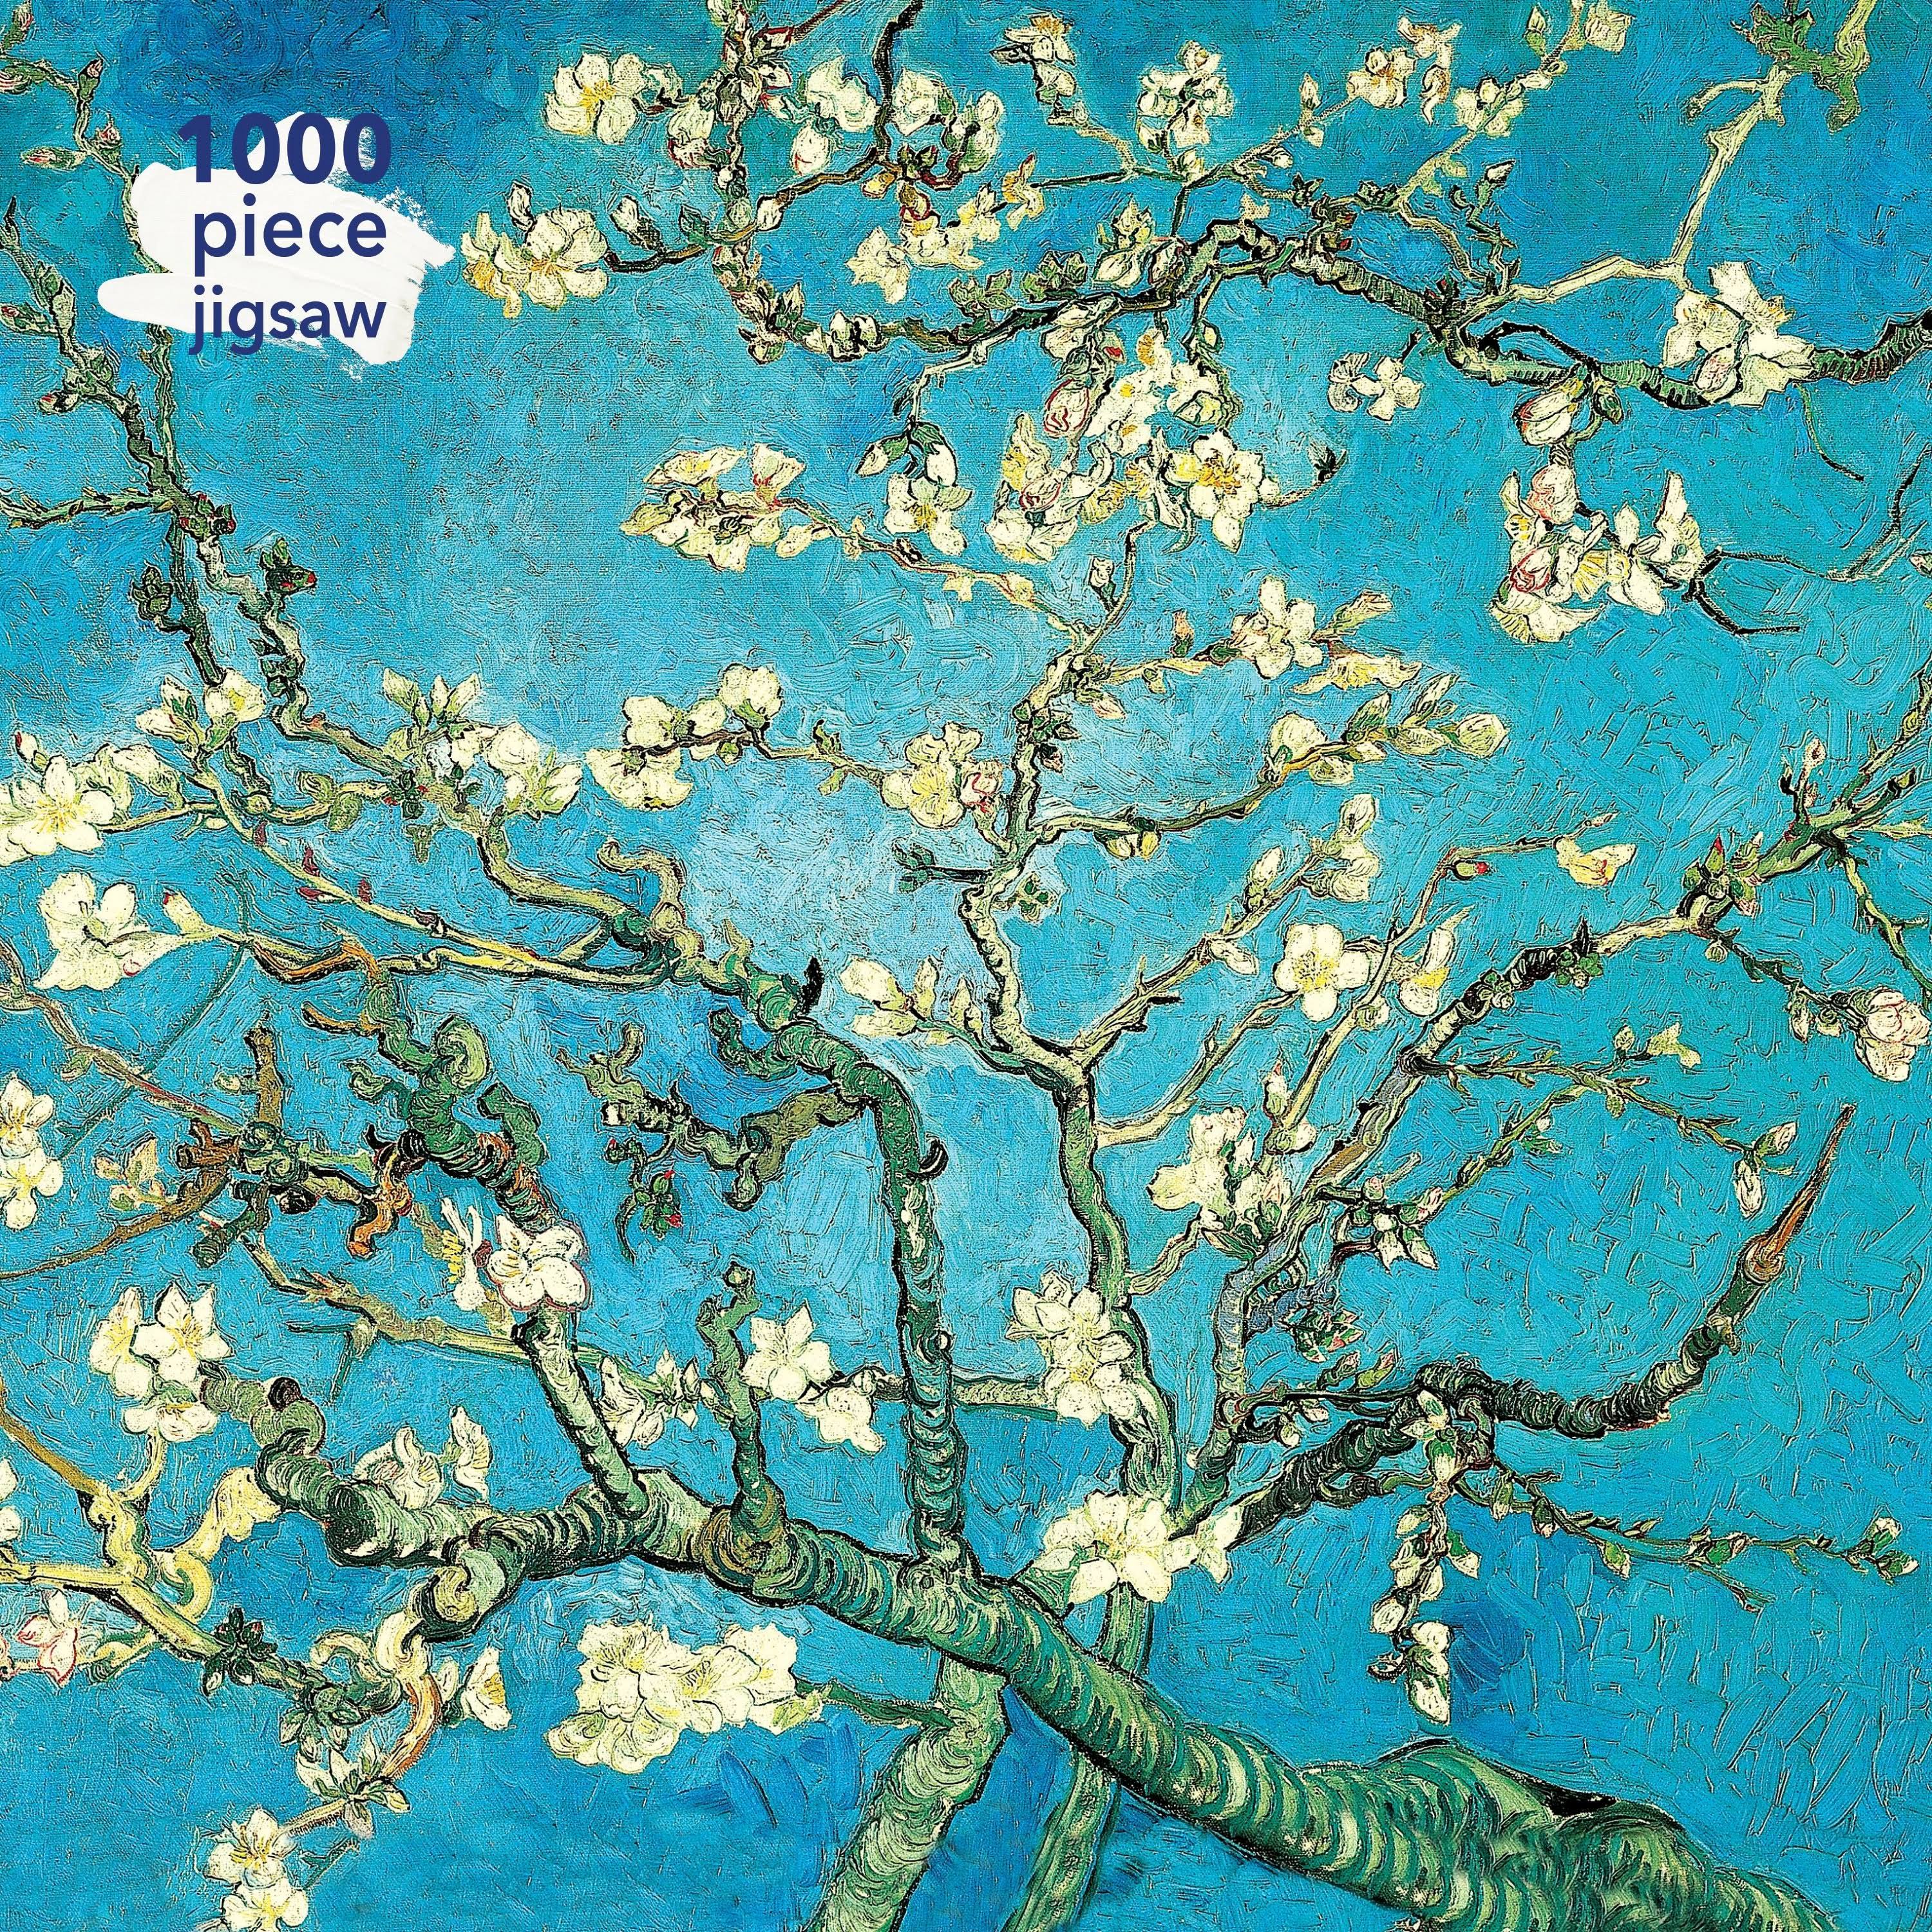 Adult Jigsaw Vincent Van Gogh - Almond Blossom: 1000 Piece Jigsaw